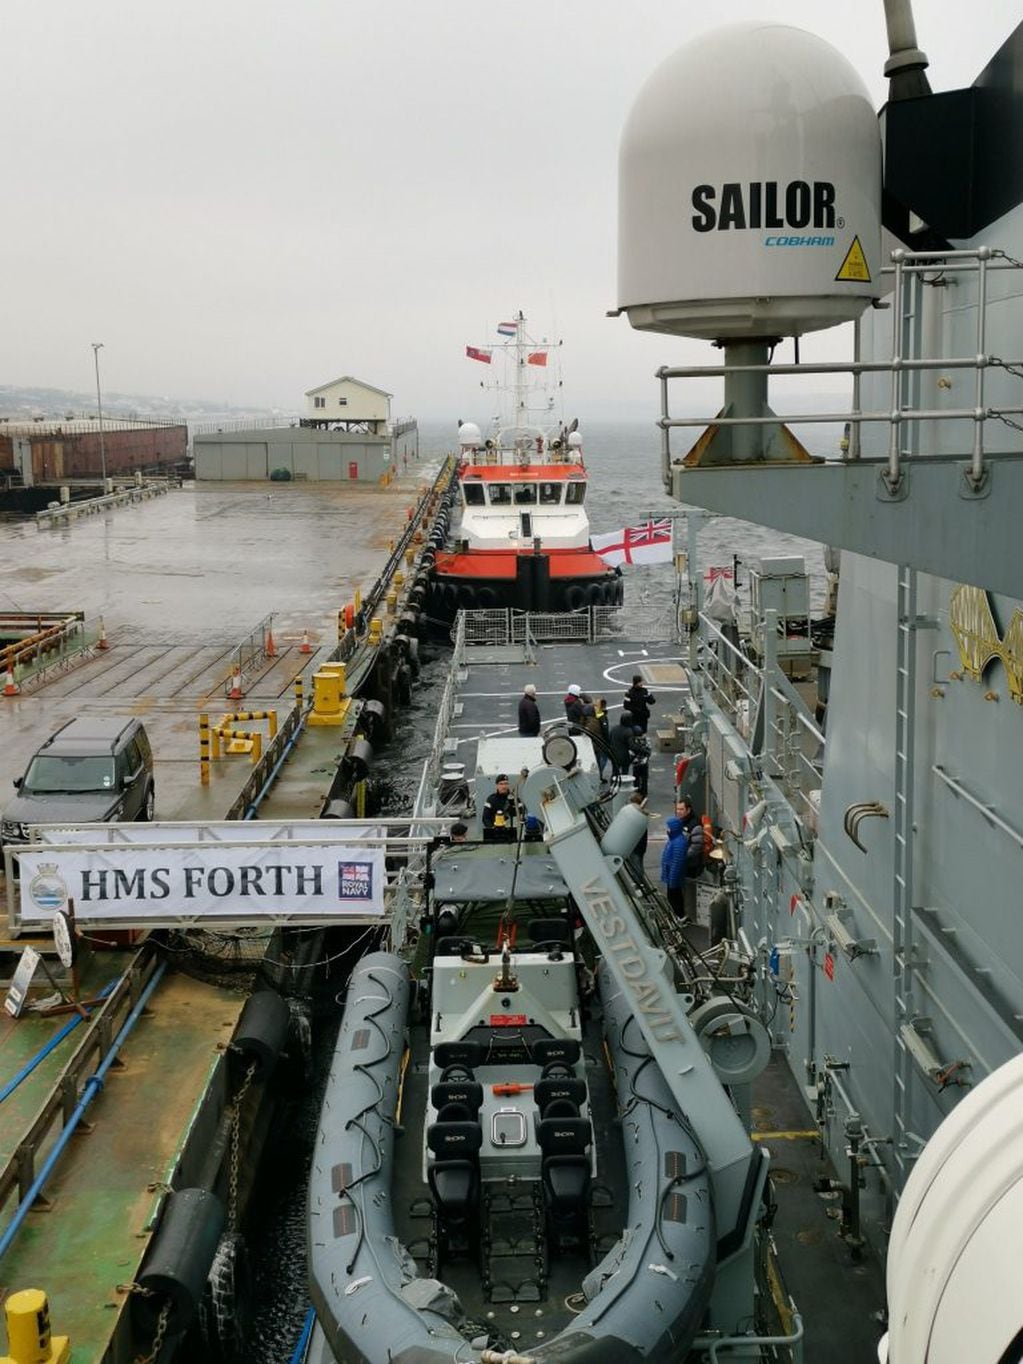 HMS "FORTH" Amarrado en Puerto Argentino. Detrás se observa al remolcador Dintelstroom.